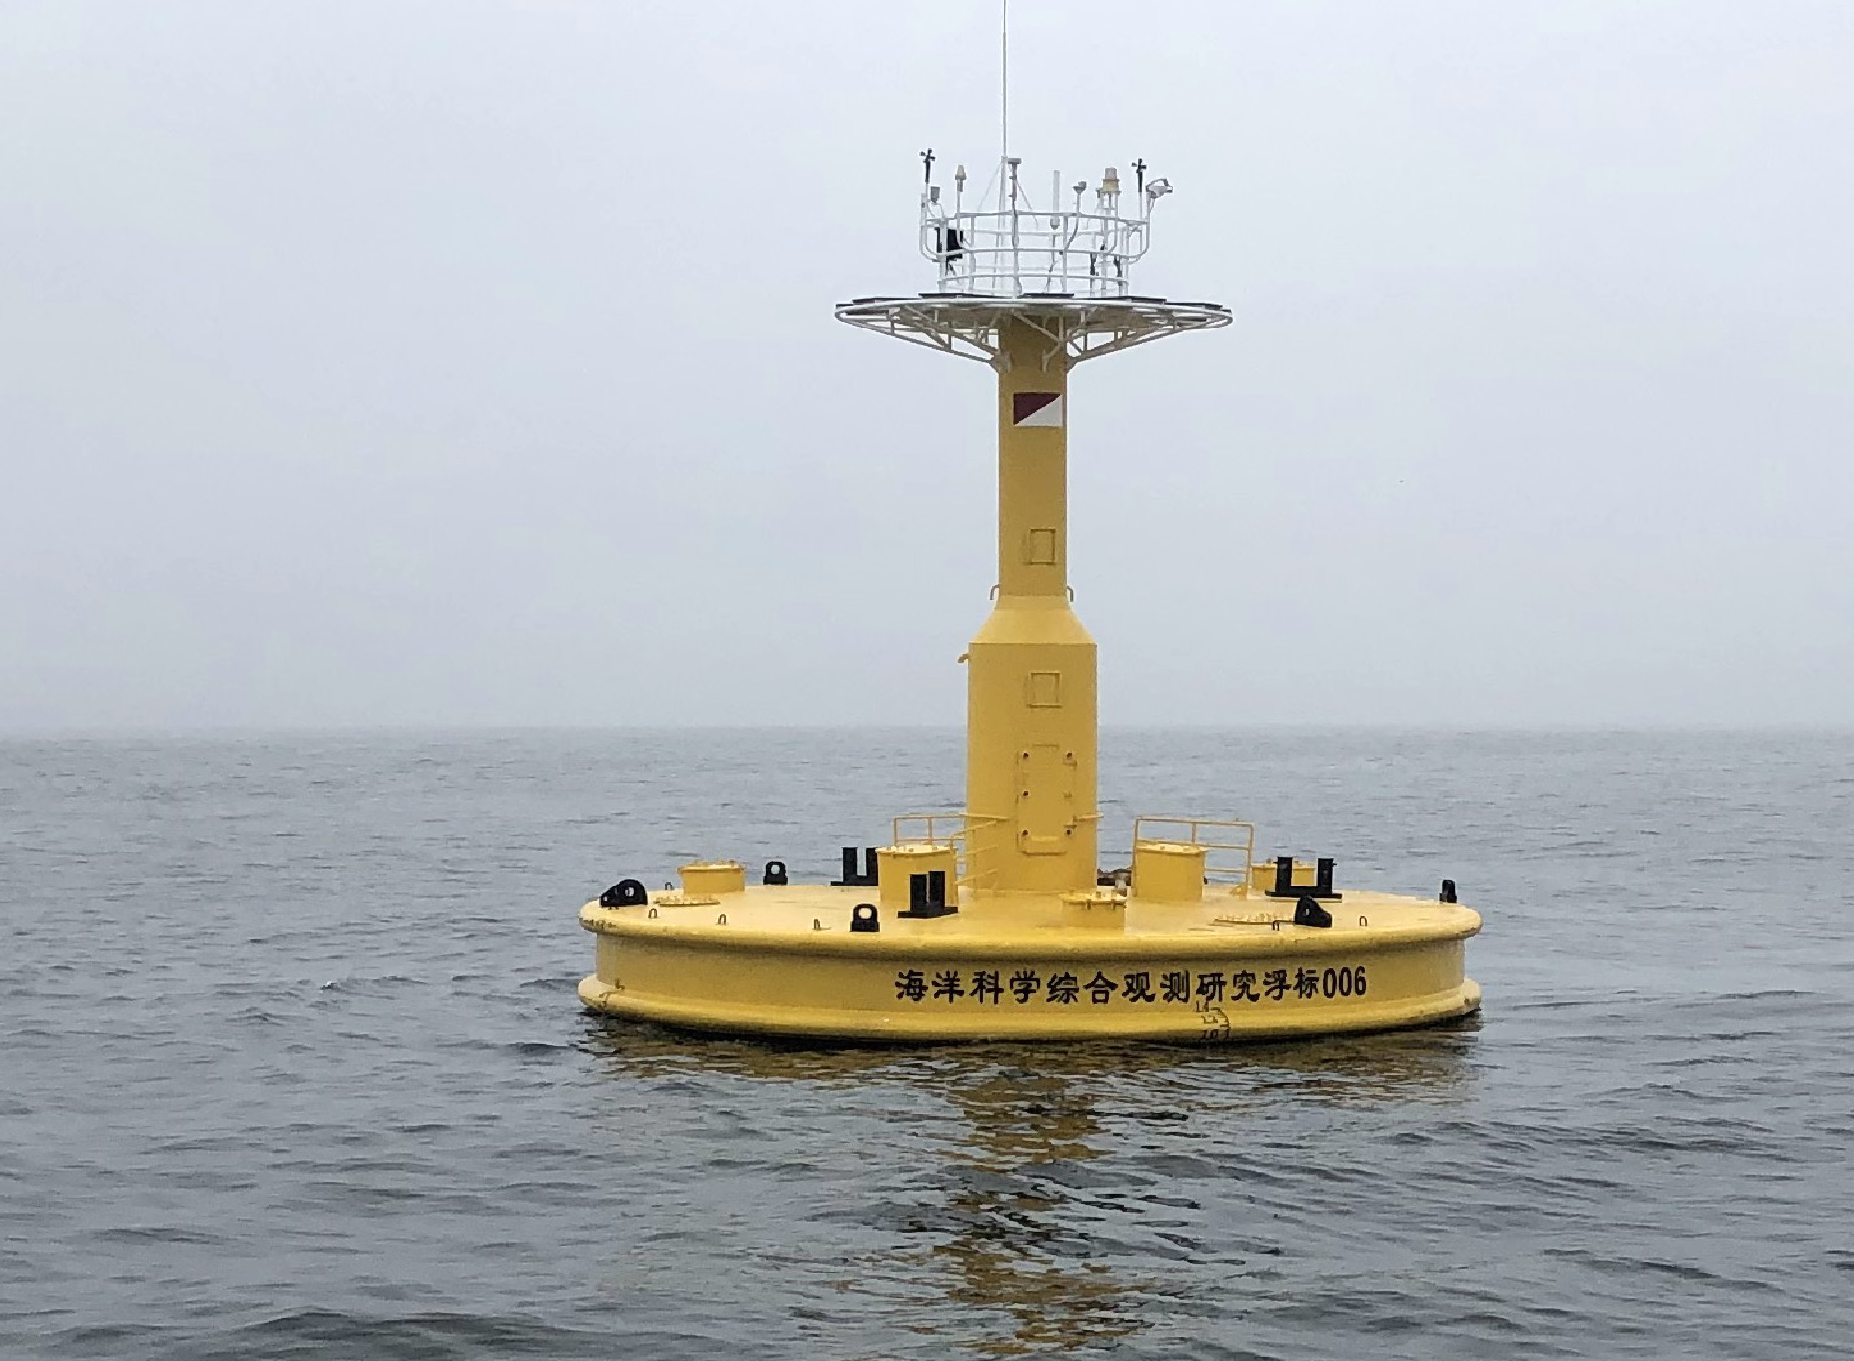 16日,记者从中科院海洋所获悉,该所黄,东海浮标观测站共计14套浮标